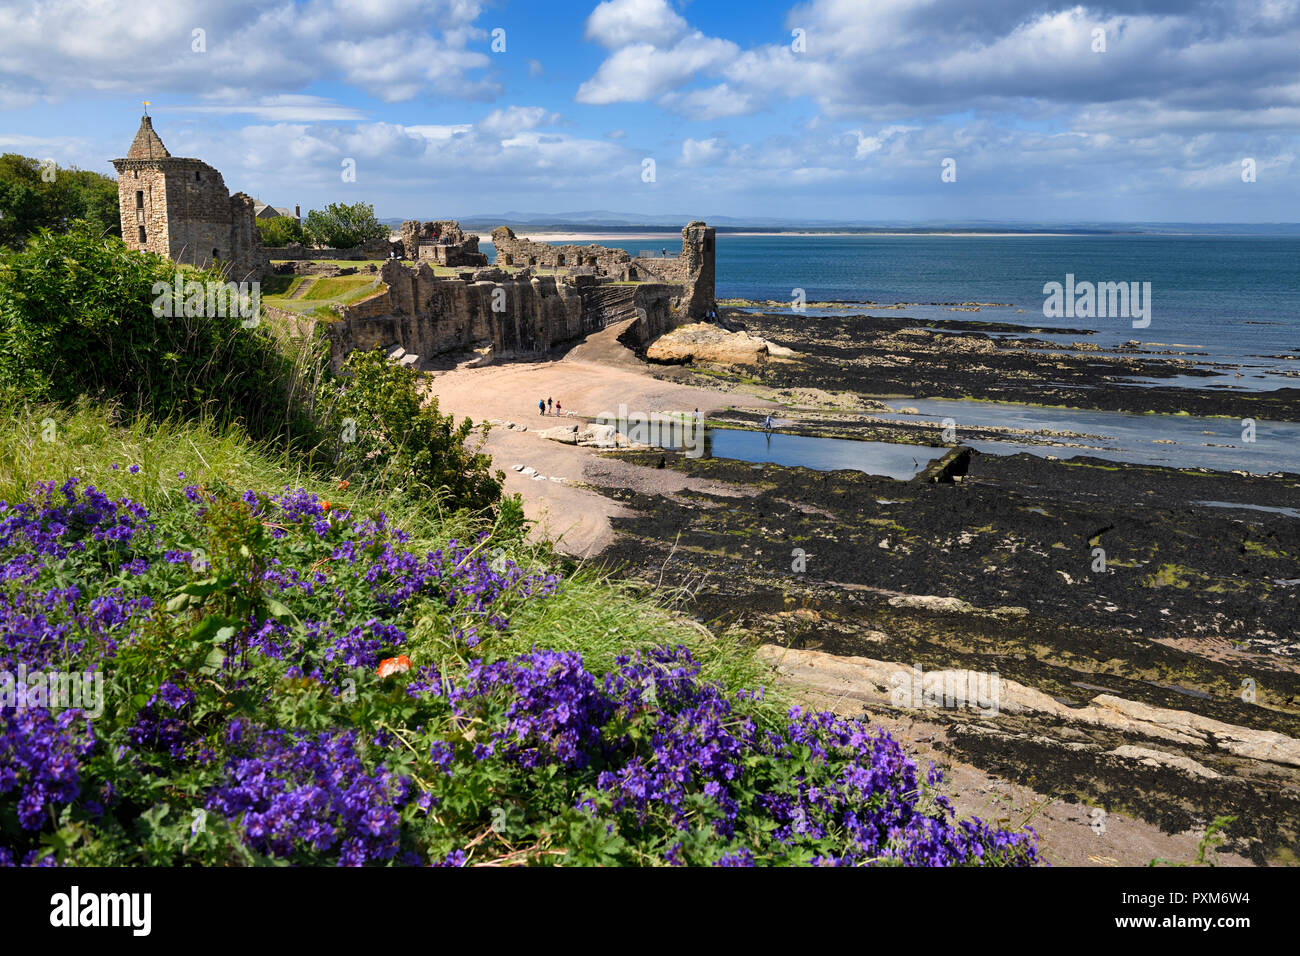 Ruines du château de St Andrews, sur la côte de la mer du nord des rocheuses surplombant Château Sands Beach à St Andrews Fife Scotland UK avec géraniums violet Banque D'Images